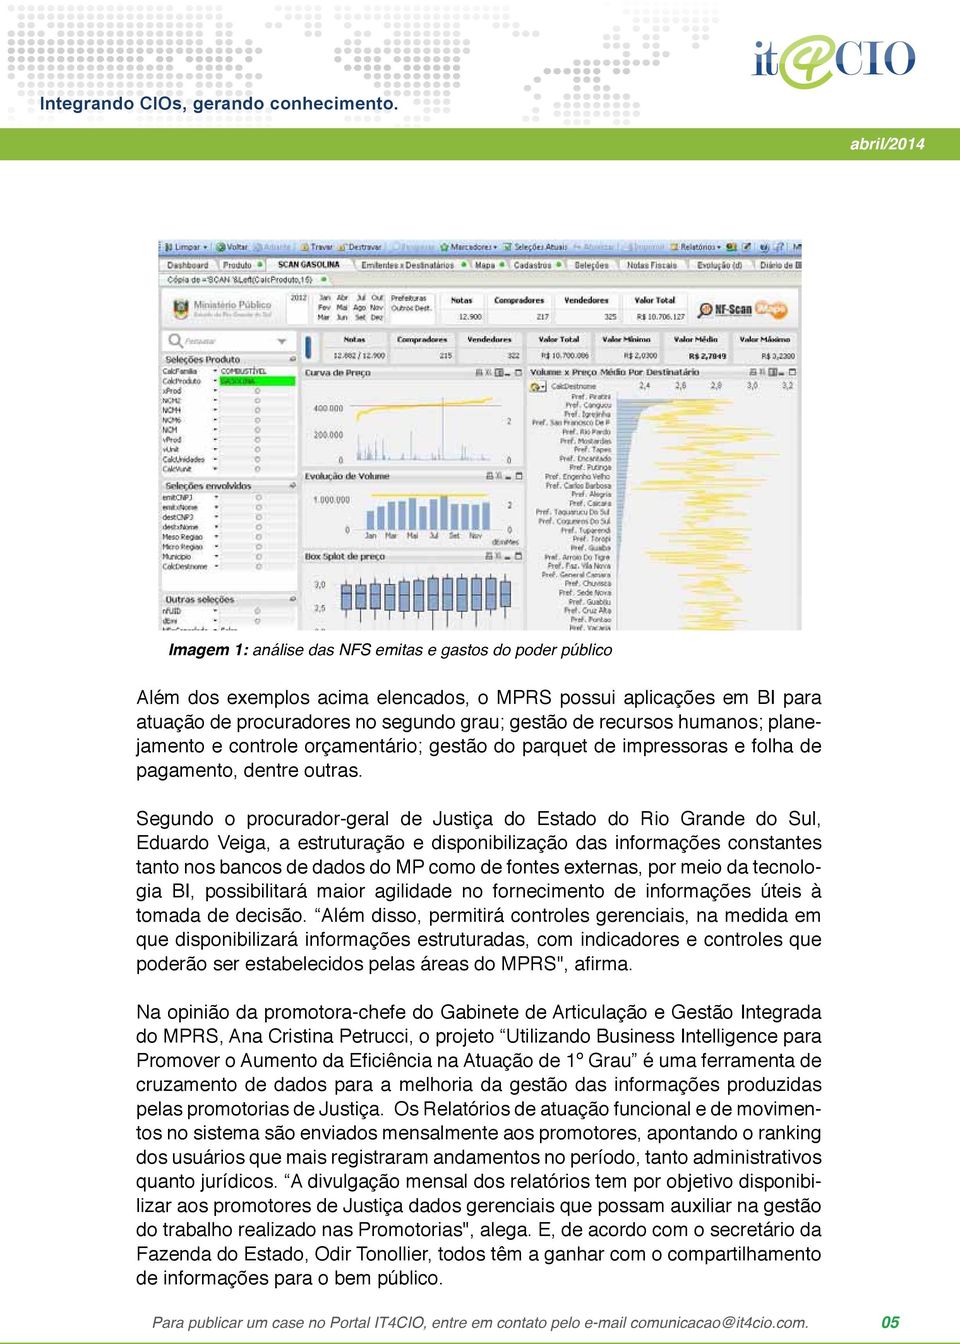 Segundo o procurador-geral de Justiça do Estado do Rio Grande do Sul, Eduardo Veiga, a estruturação e disponibilização das informações constantes tanto nos bancos de dados do MP como de fontes